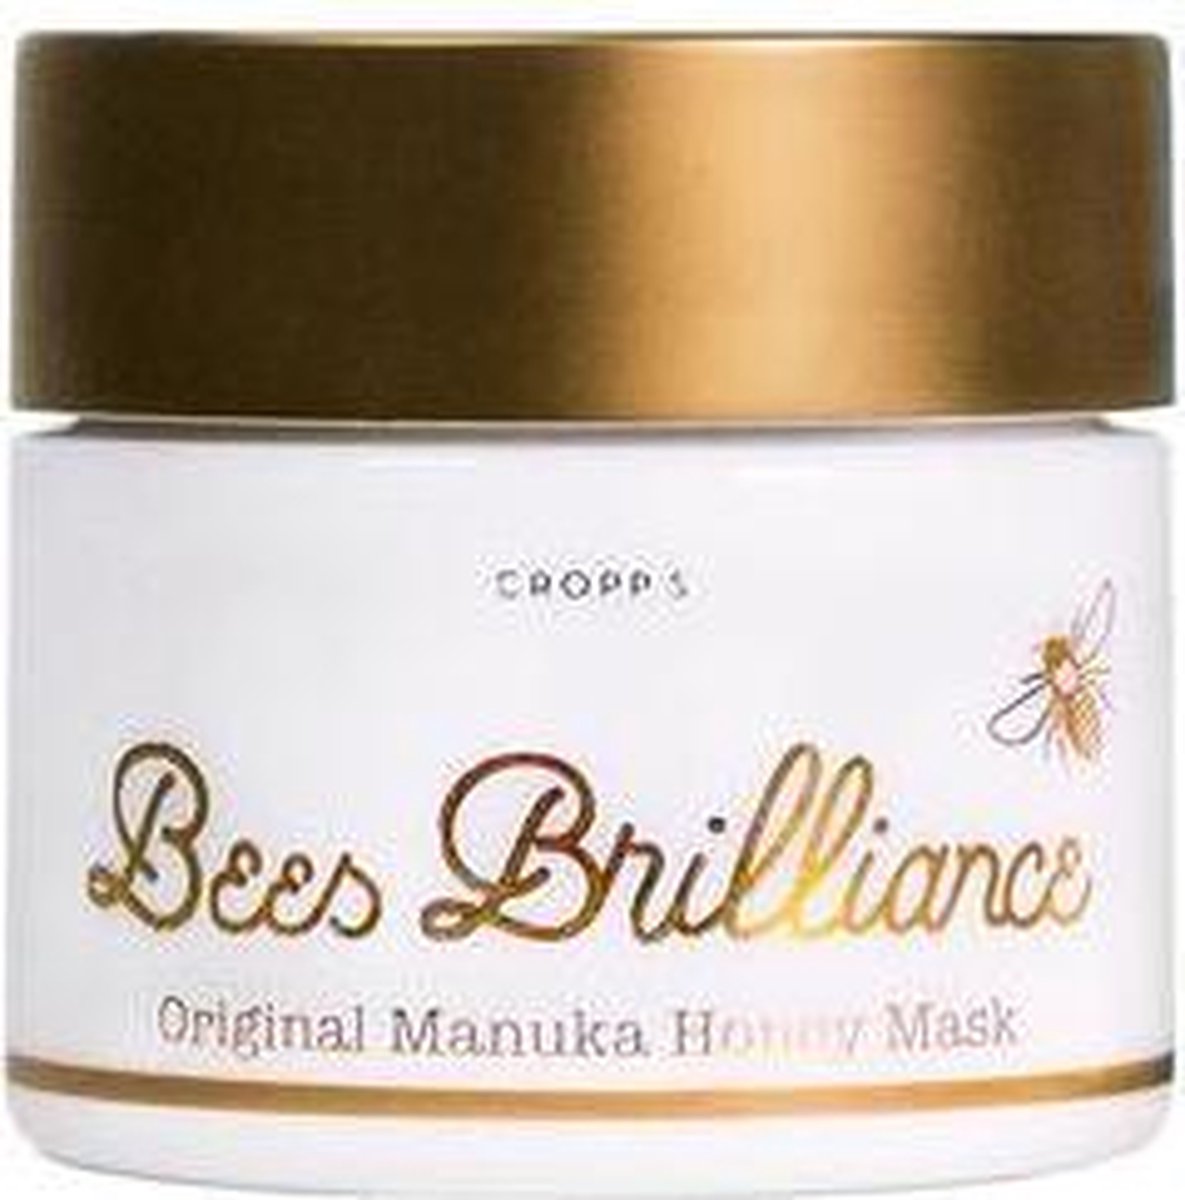 Bees Brilliance Manuka honey mask 100 ml